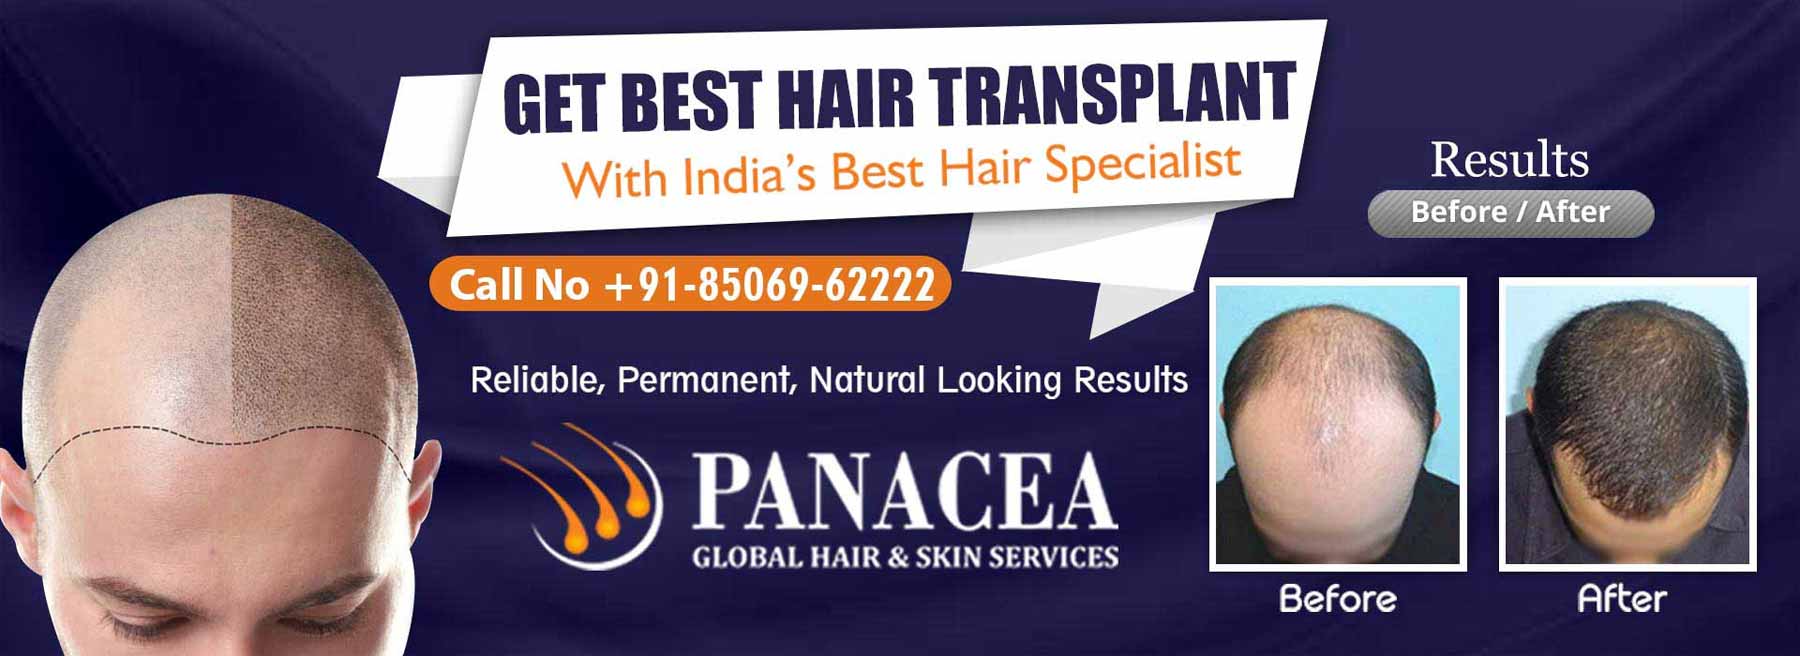 Get Best Hair Transplant - Panacea Global in Nilothi